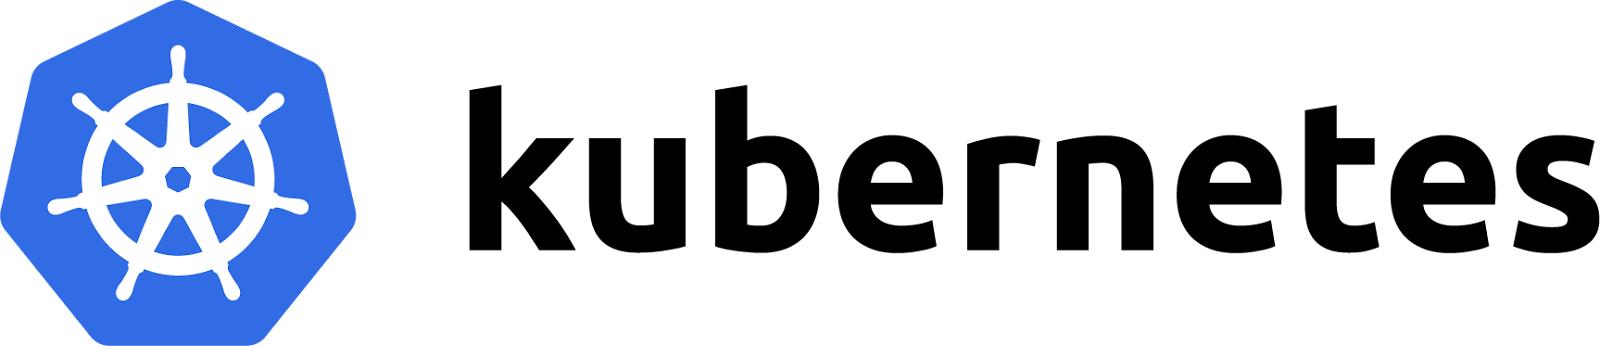 kubernetes logo image